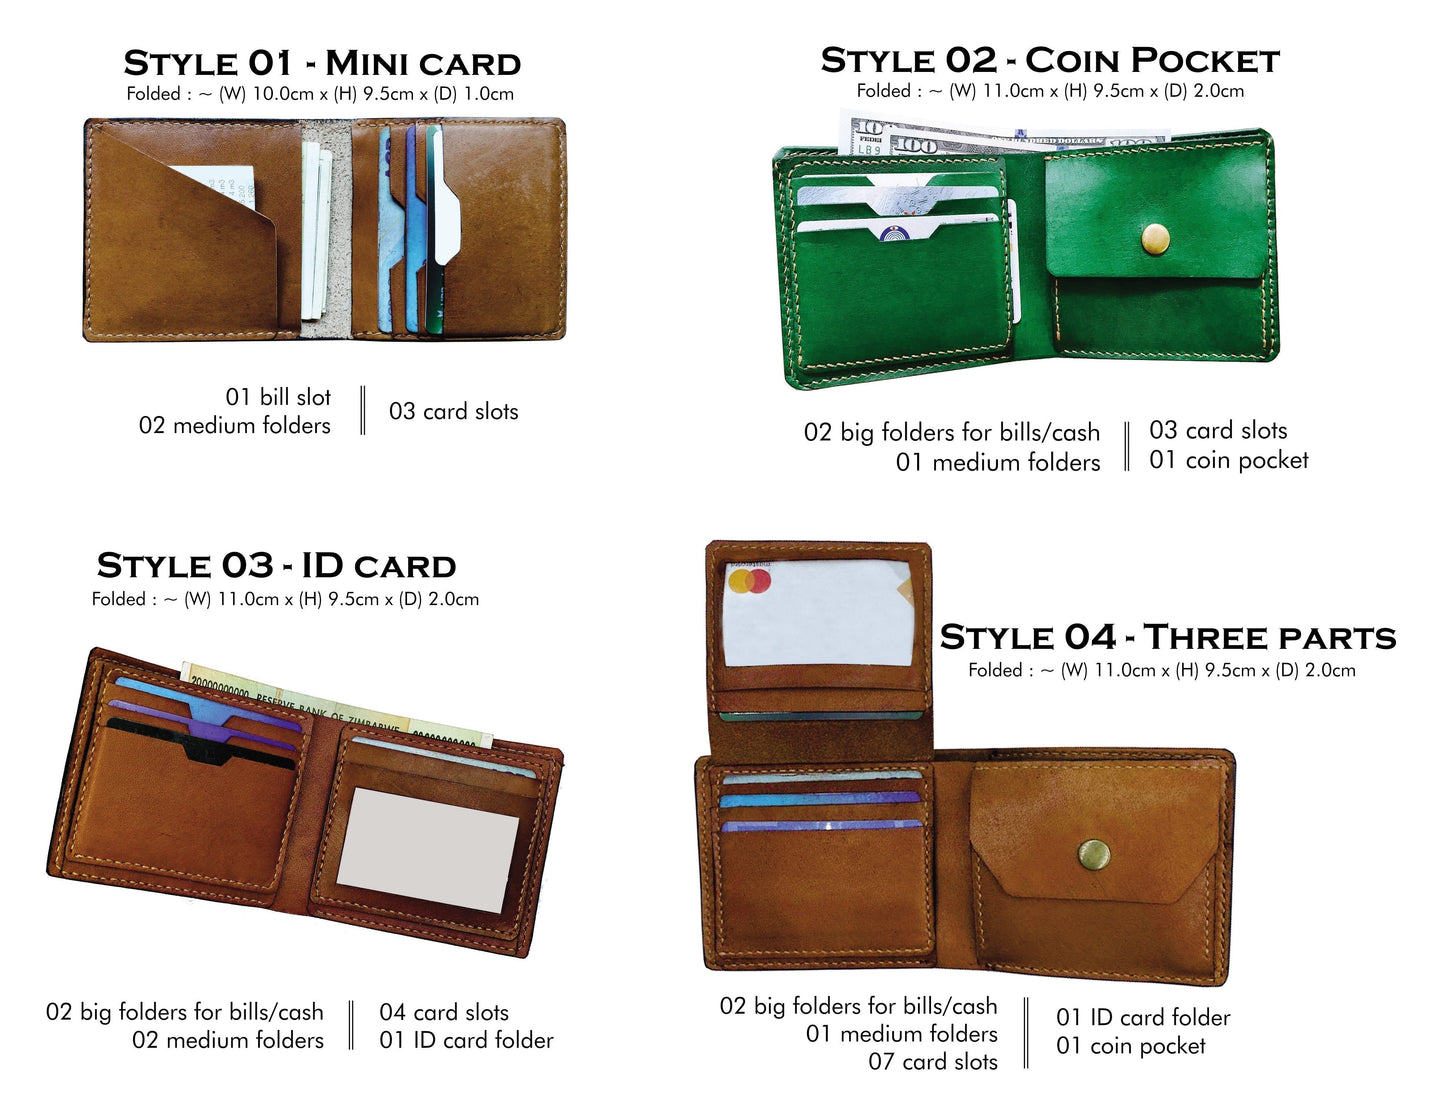 Legend of Zelda leather men's wallet, custom engraving wallet, gift for gamer, Zelda pattern gift for him